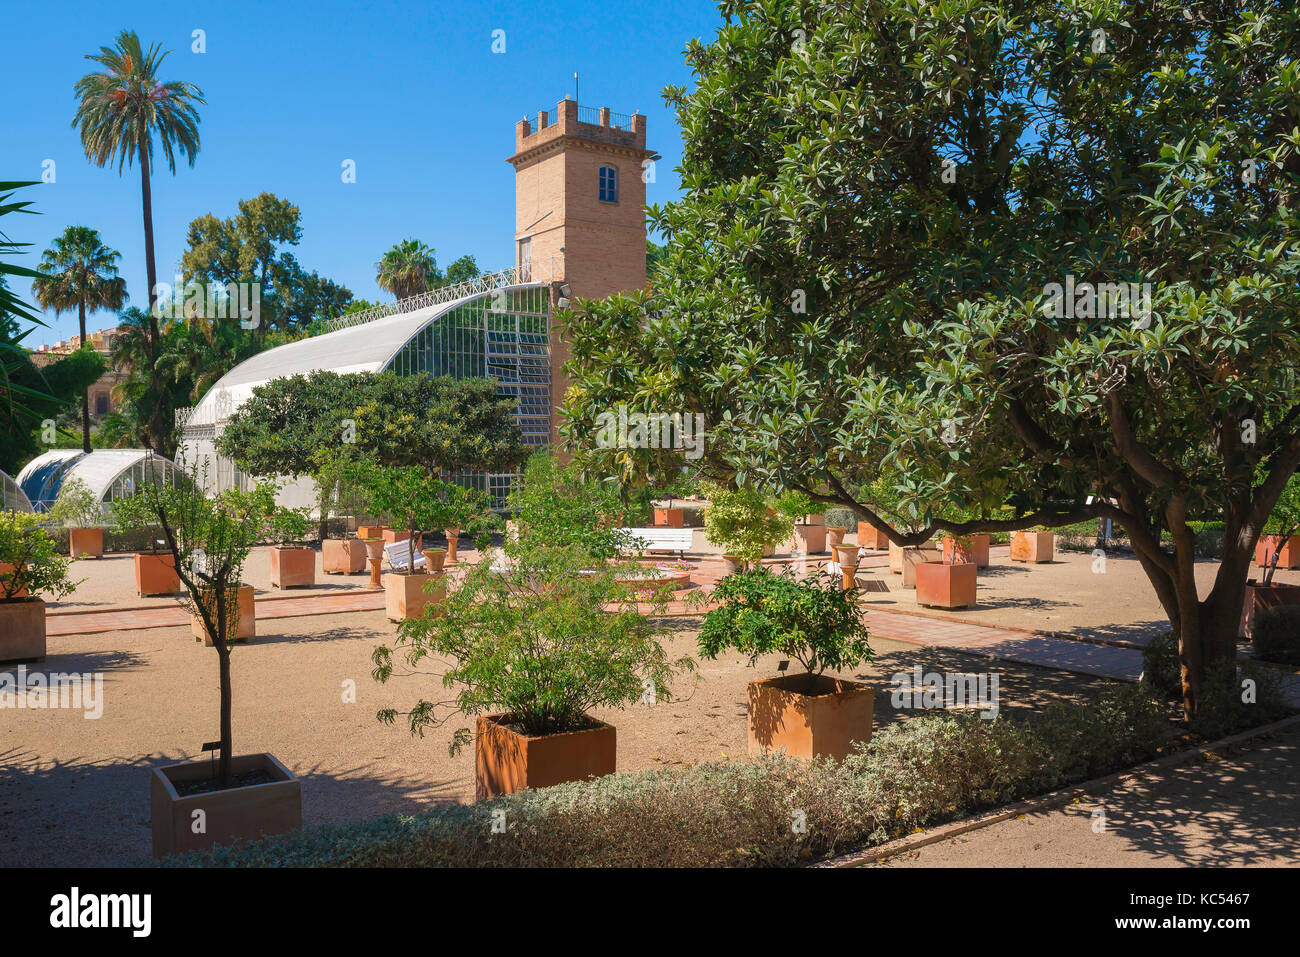 Botanischer Garten Valencia Spanien, Blick durch Oliven- und Zitronenbäume eines großen modernen Wintergarten Gebäude im Jardin Botanico in Valencia. Stockfoto